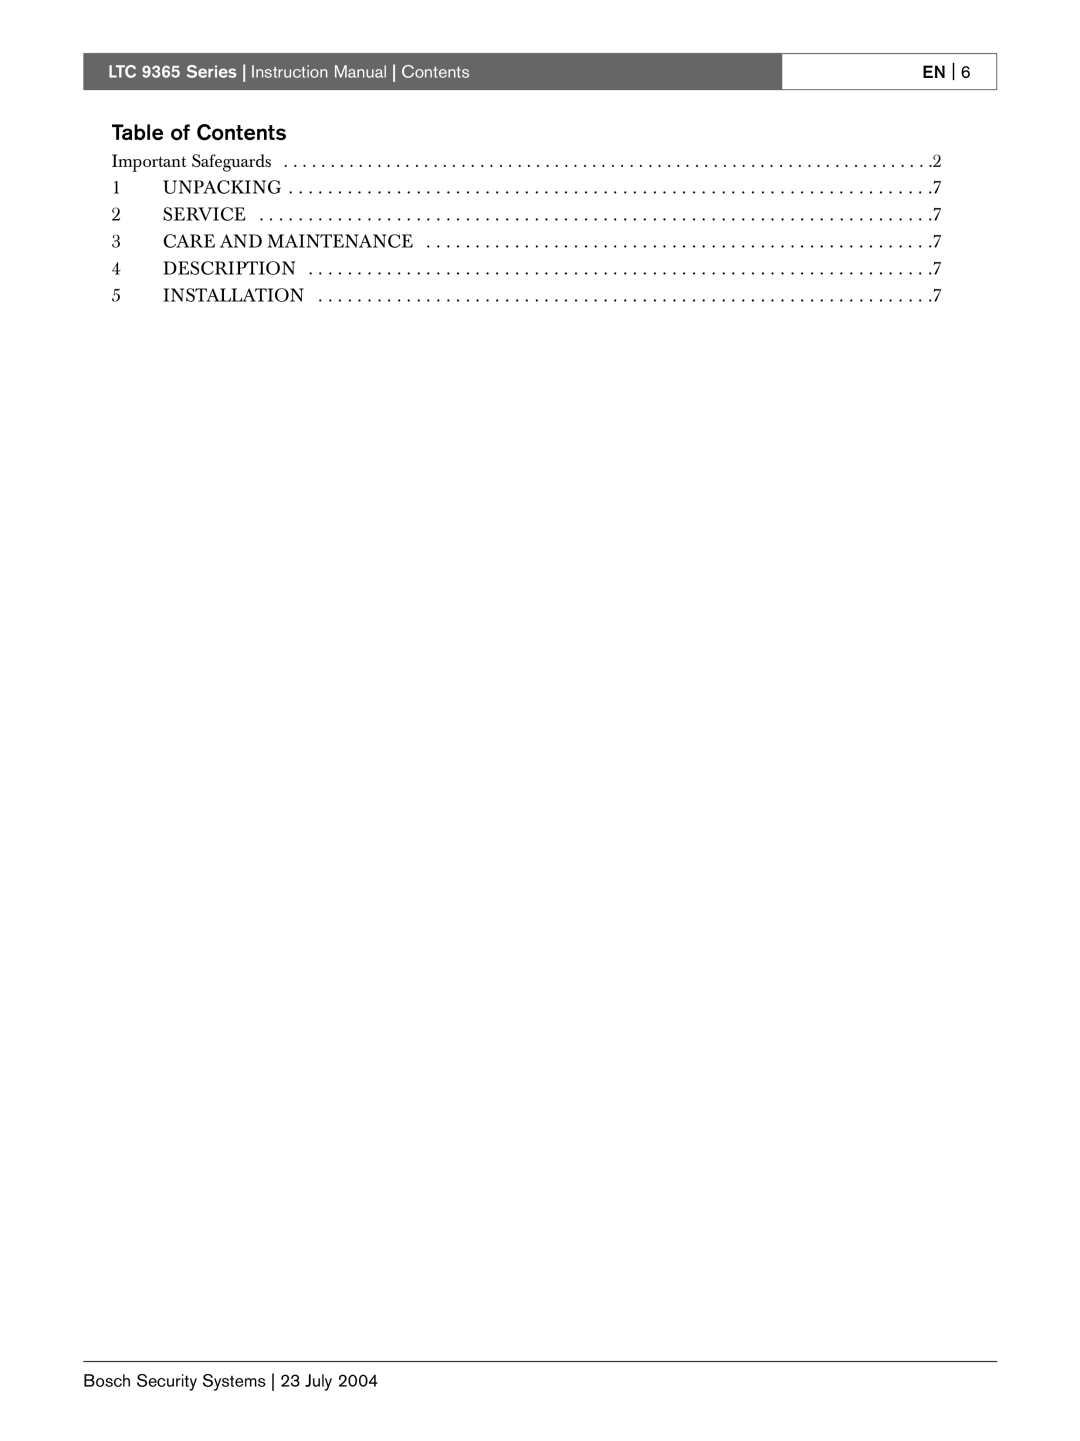 Bosch Appliances LTC 9365/00 Table of Contents, LTC 9365 Series Instruction Manual Contents, DESCRIPTION 5 INSTALLATION 